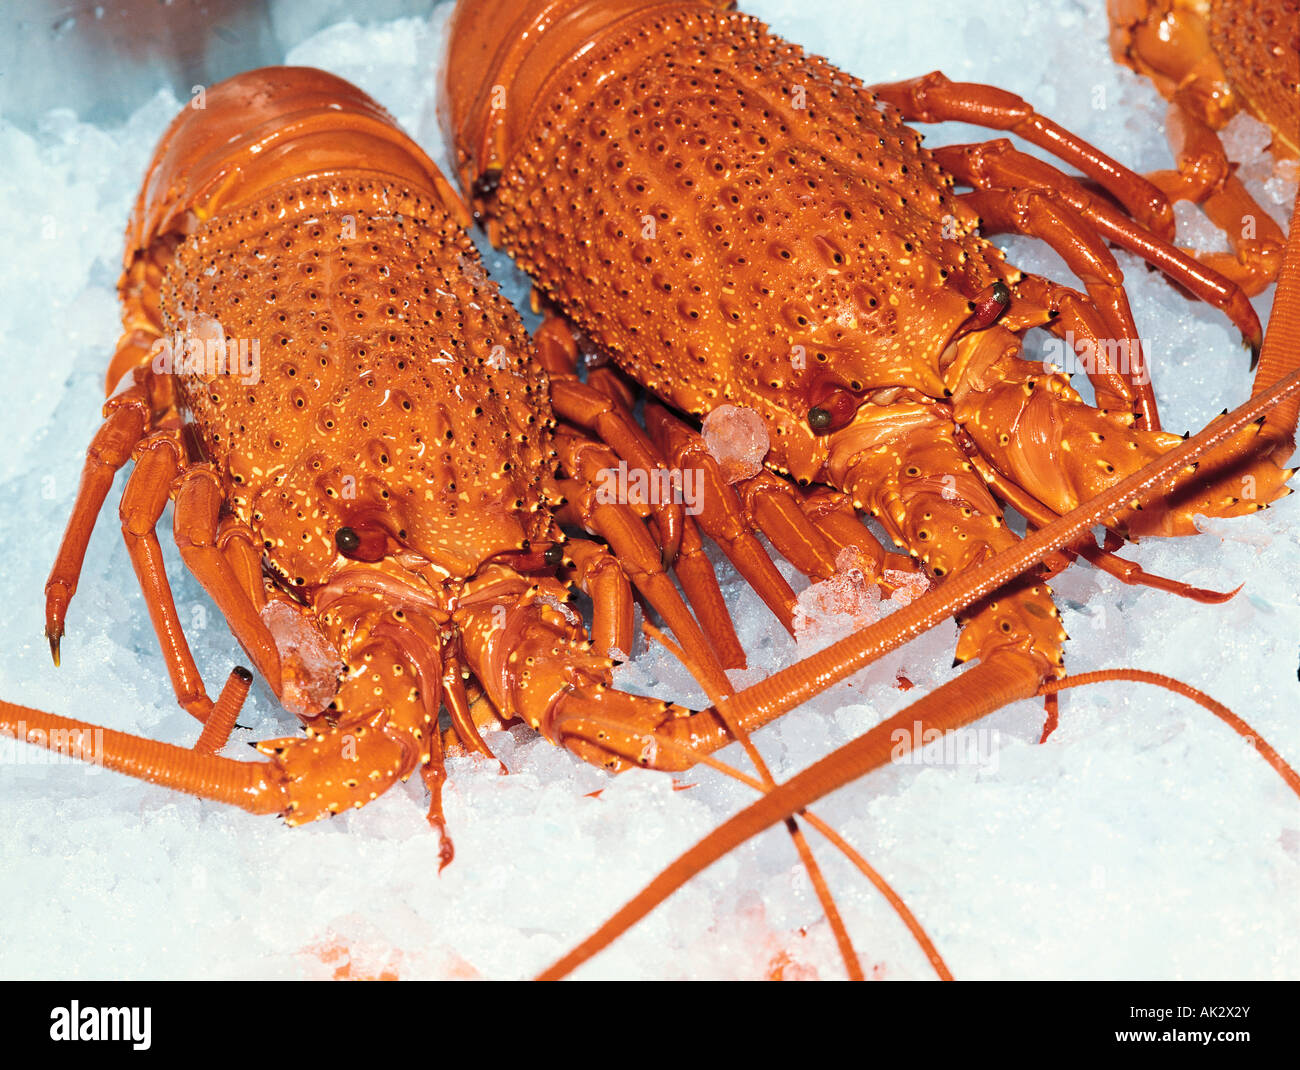 Australia. Mercato del pesce di Sydney. Vita morta. Cibo. Australian Eastern Rock Lobsters (Jasus verreauxi) su ghiaccio. Foto Stock